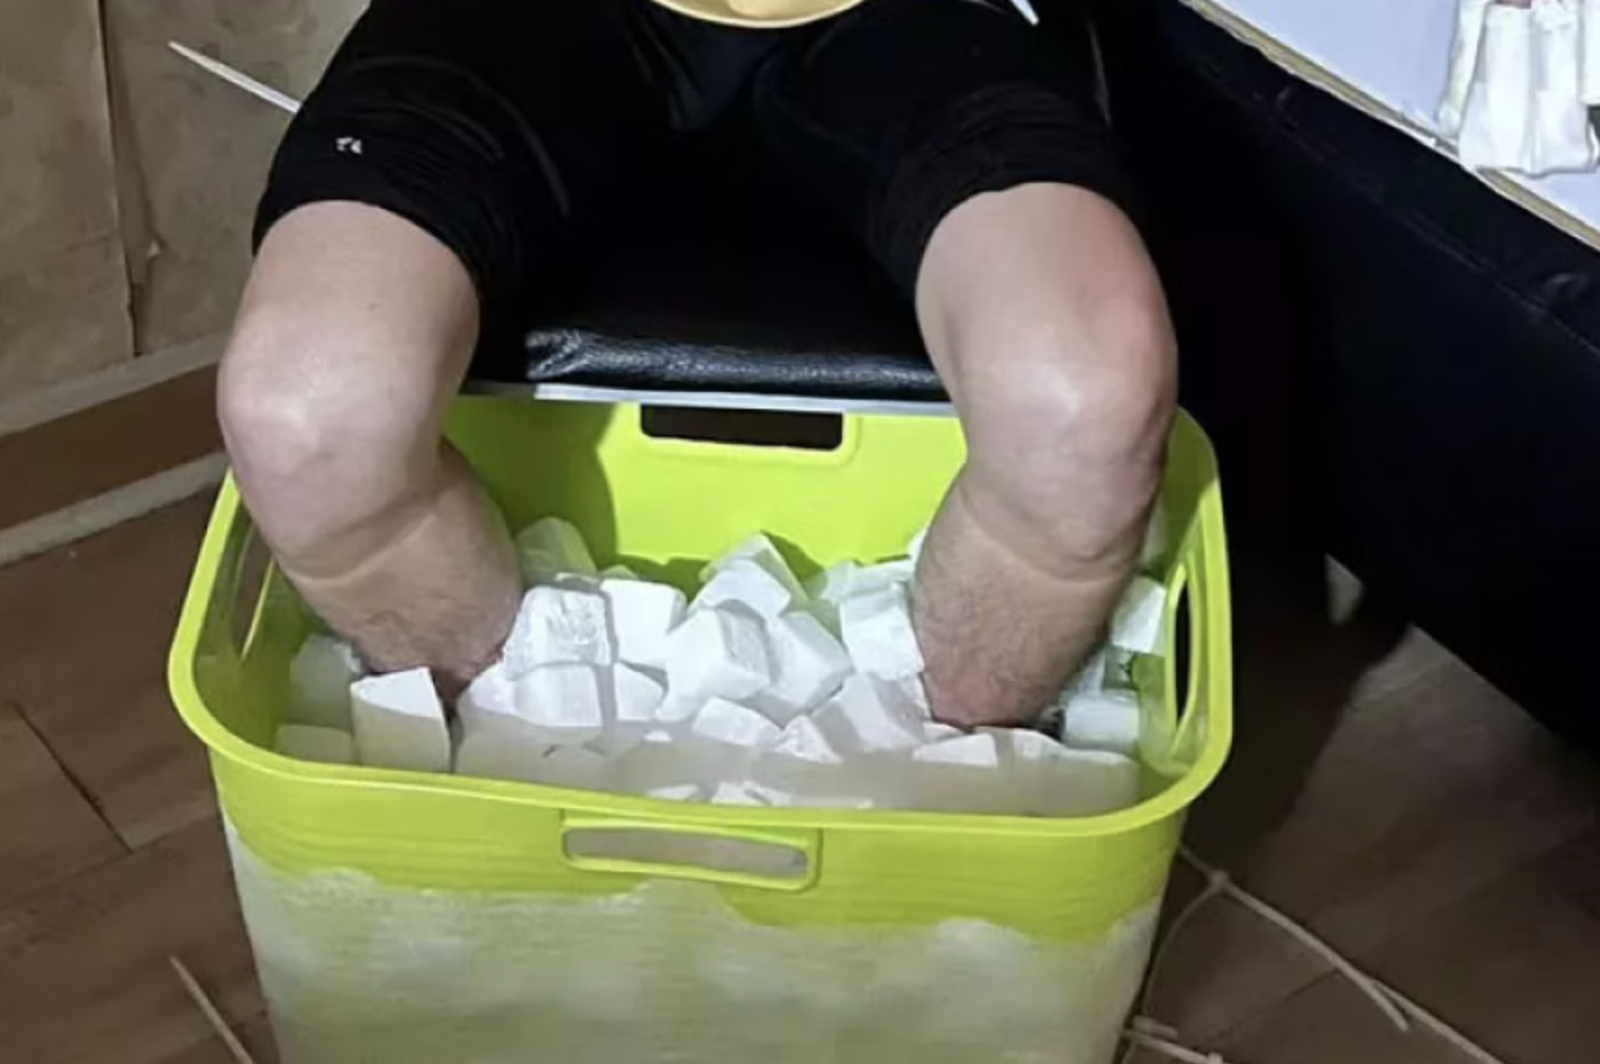 Sinh viên ở Đài Loan chấp nhận cắt cụt hai chân để lừa tiền bảo hiểm - Ảnh 1.